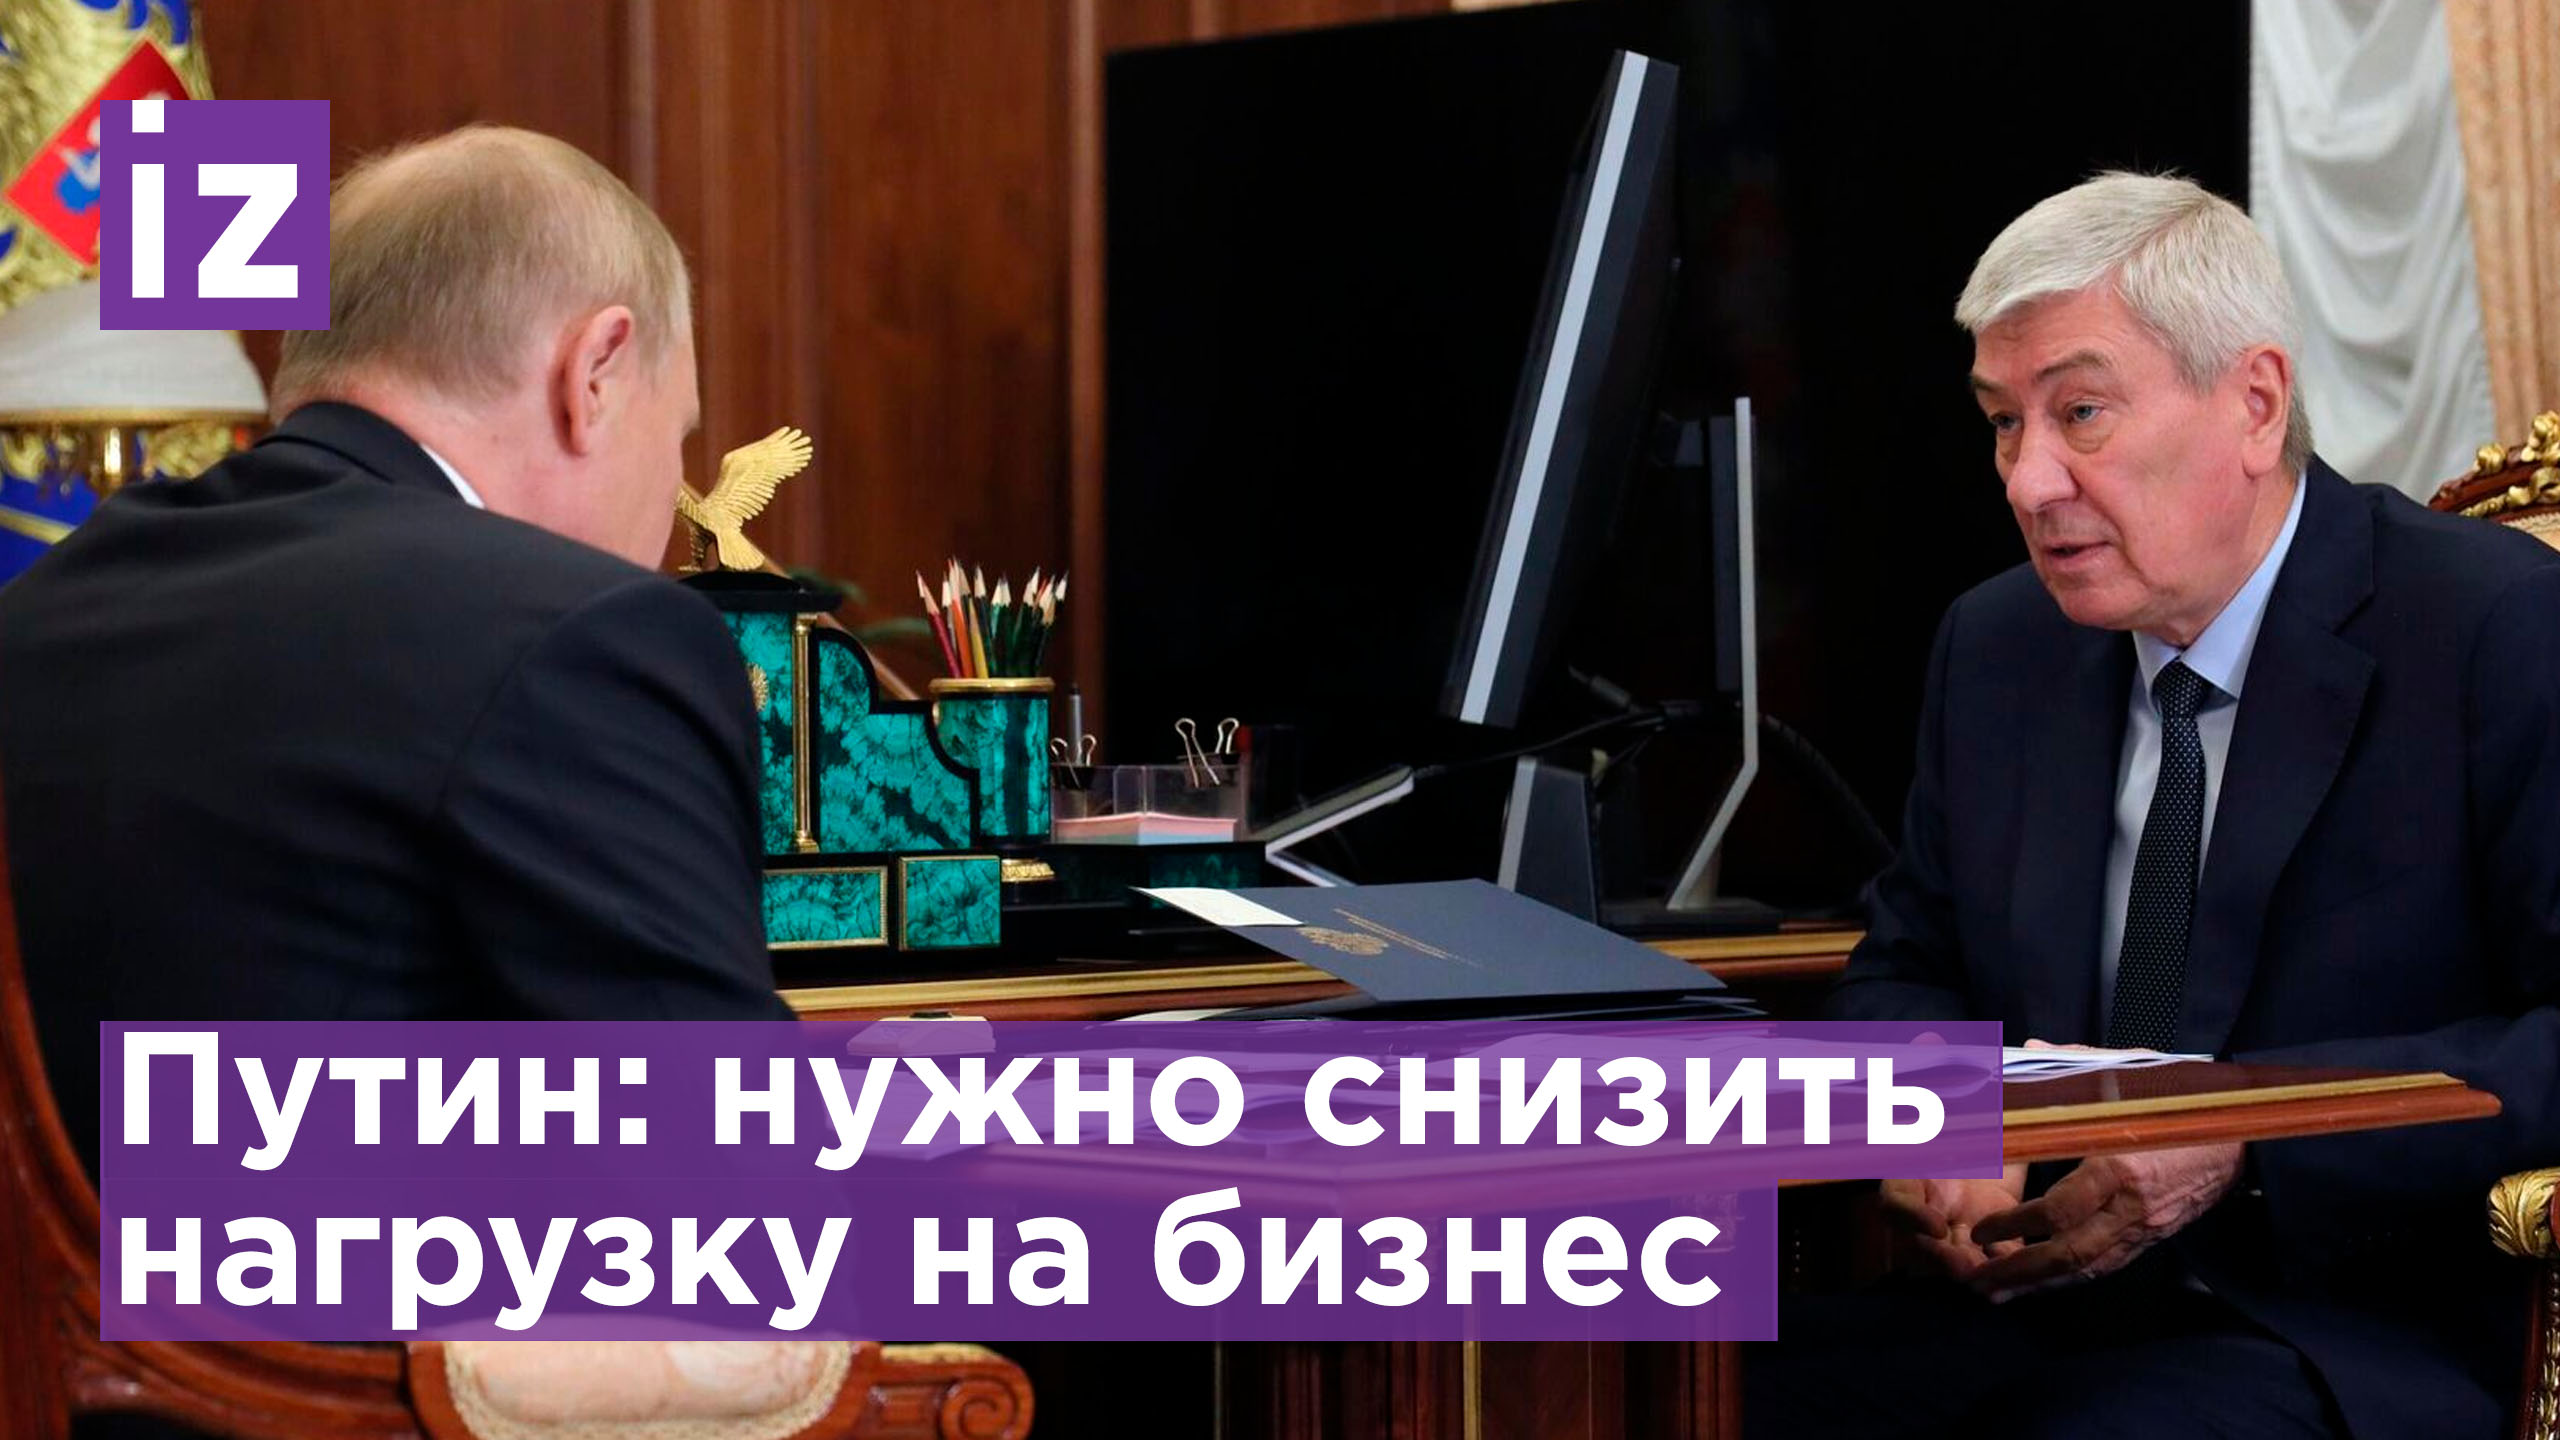 Рабочая встреча Владимира Путина с главой Росфинмониторинга: важно снизить нагрузку на бизнес